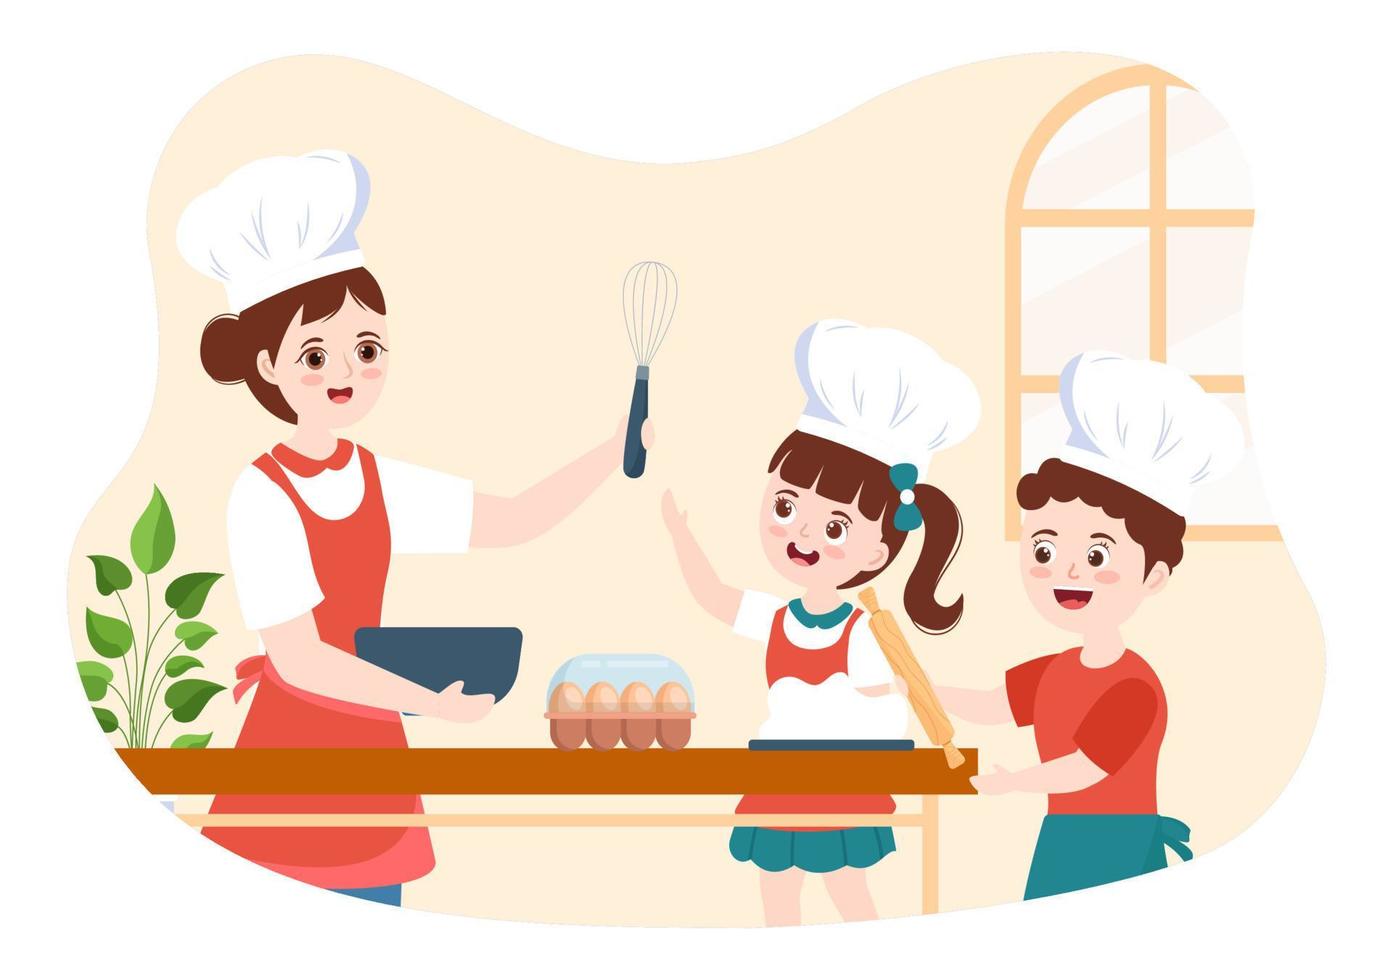 escuela de cocina con niños y maestros en una clase aprendiendo a aprender a cocinar comida casera en dibujos animados planos dibujados a mano ilustración de plantillas vector